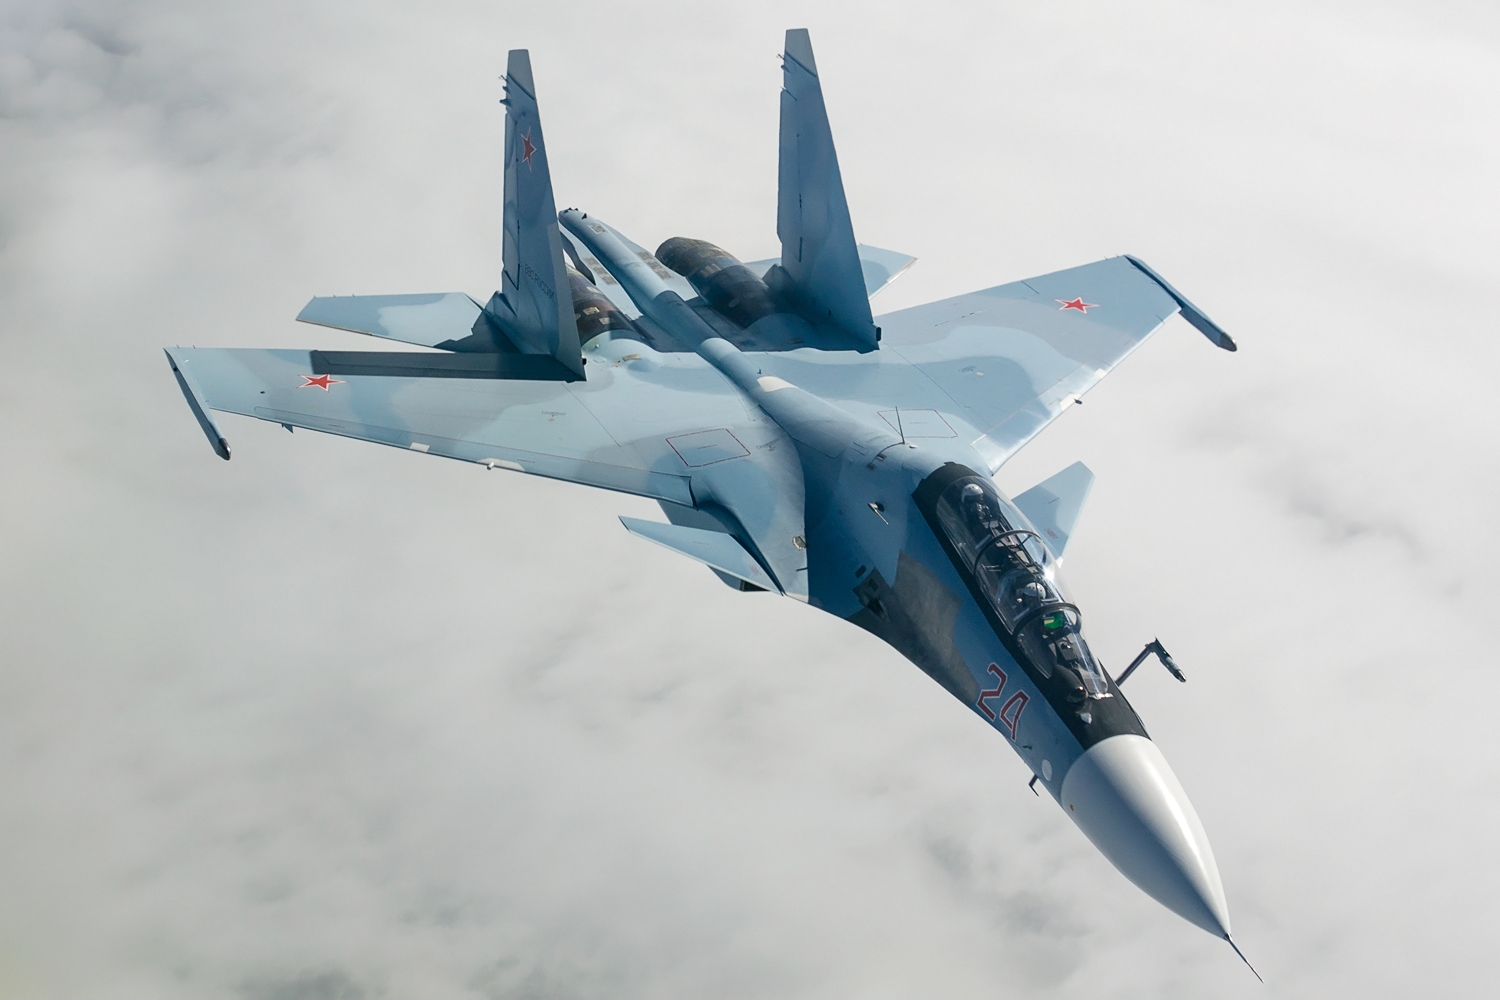 12 истребителей Су-27 и Су-30, 5 бомбардировщиков Су-24 и 6 вертолётов Ми-8 – стали известны потери российской авиации на аэродроме в Крыму